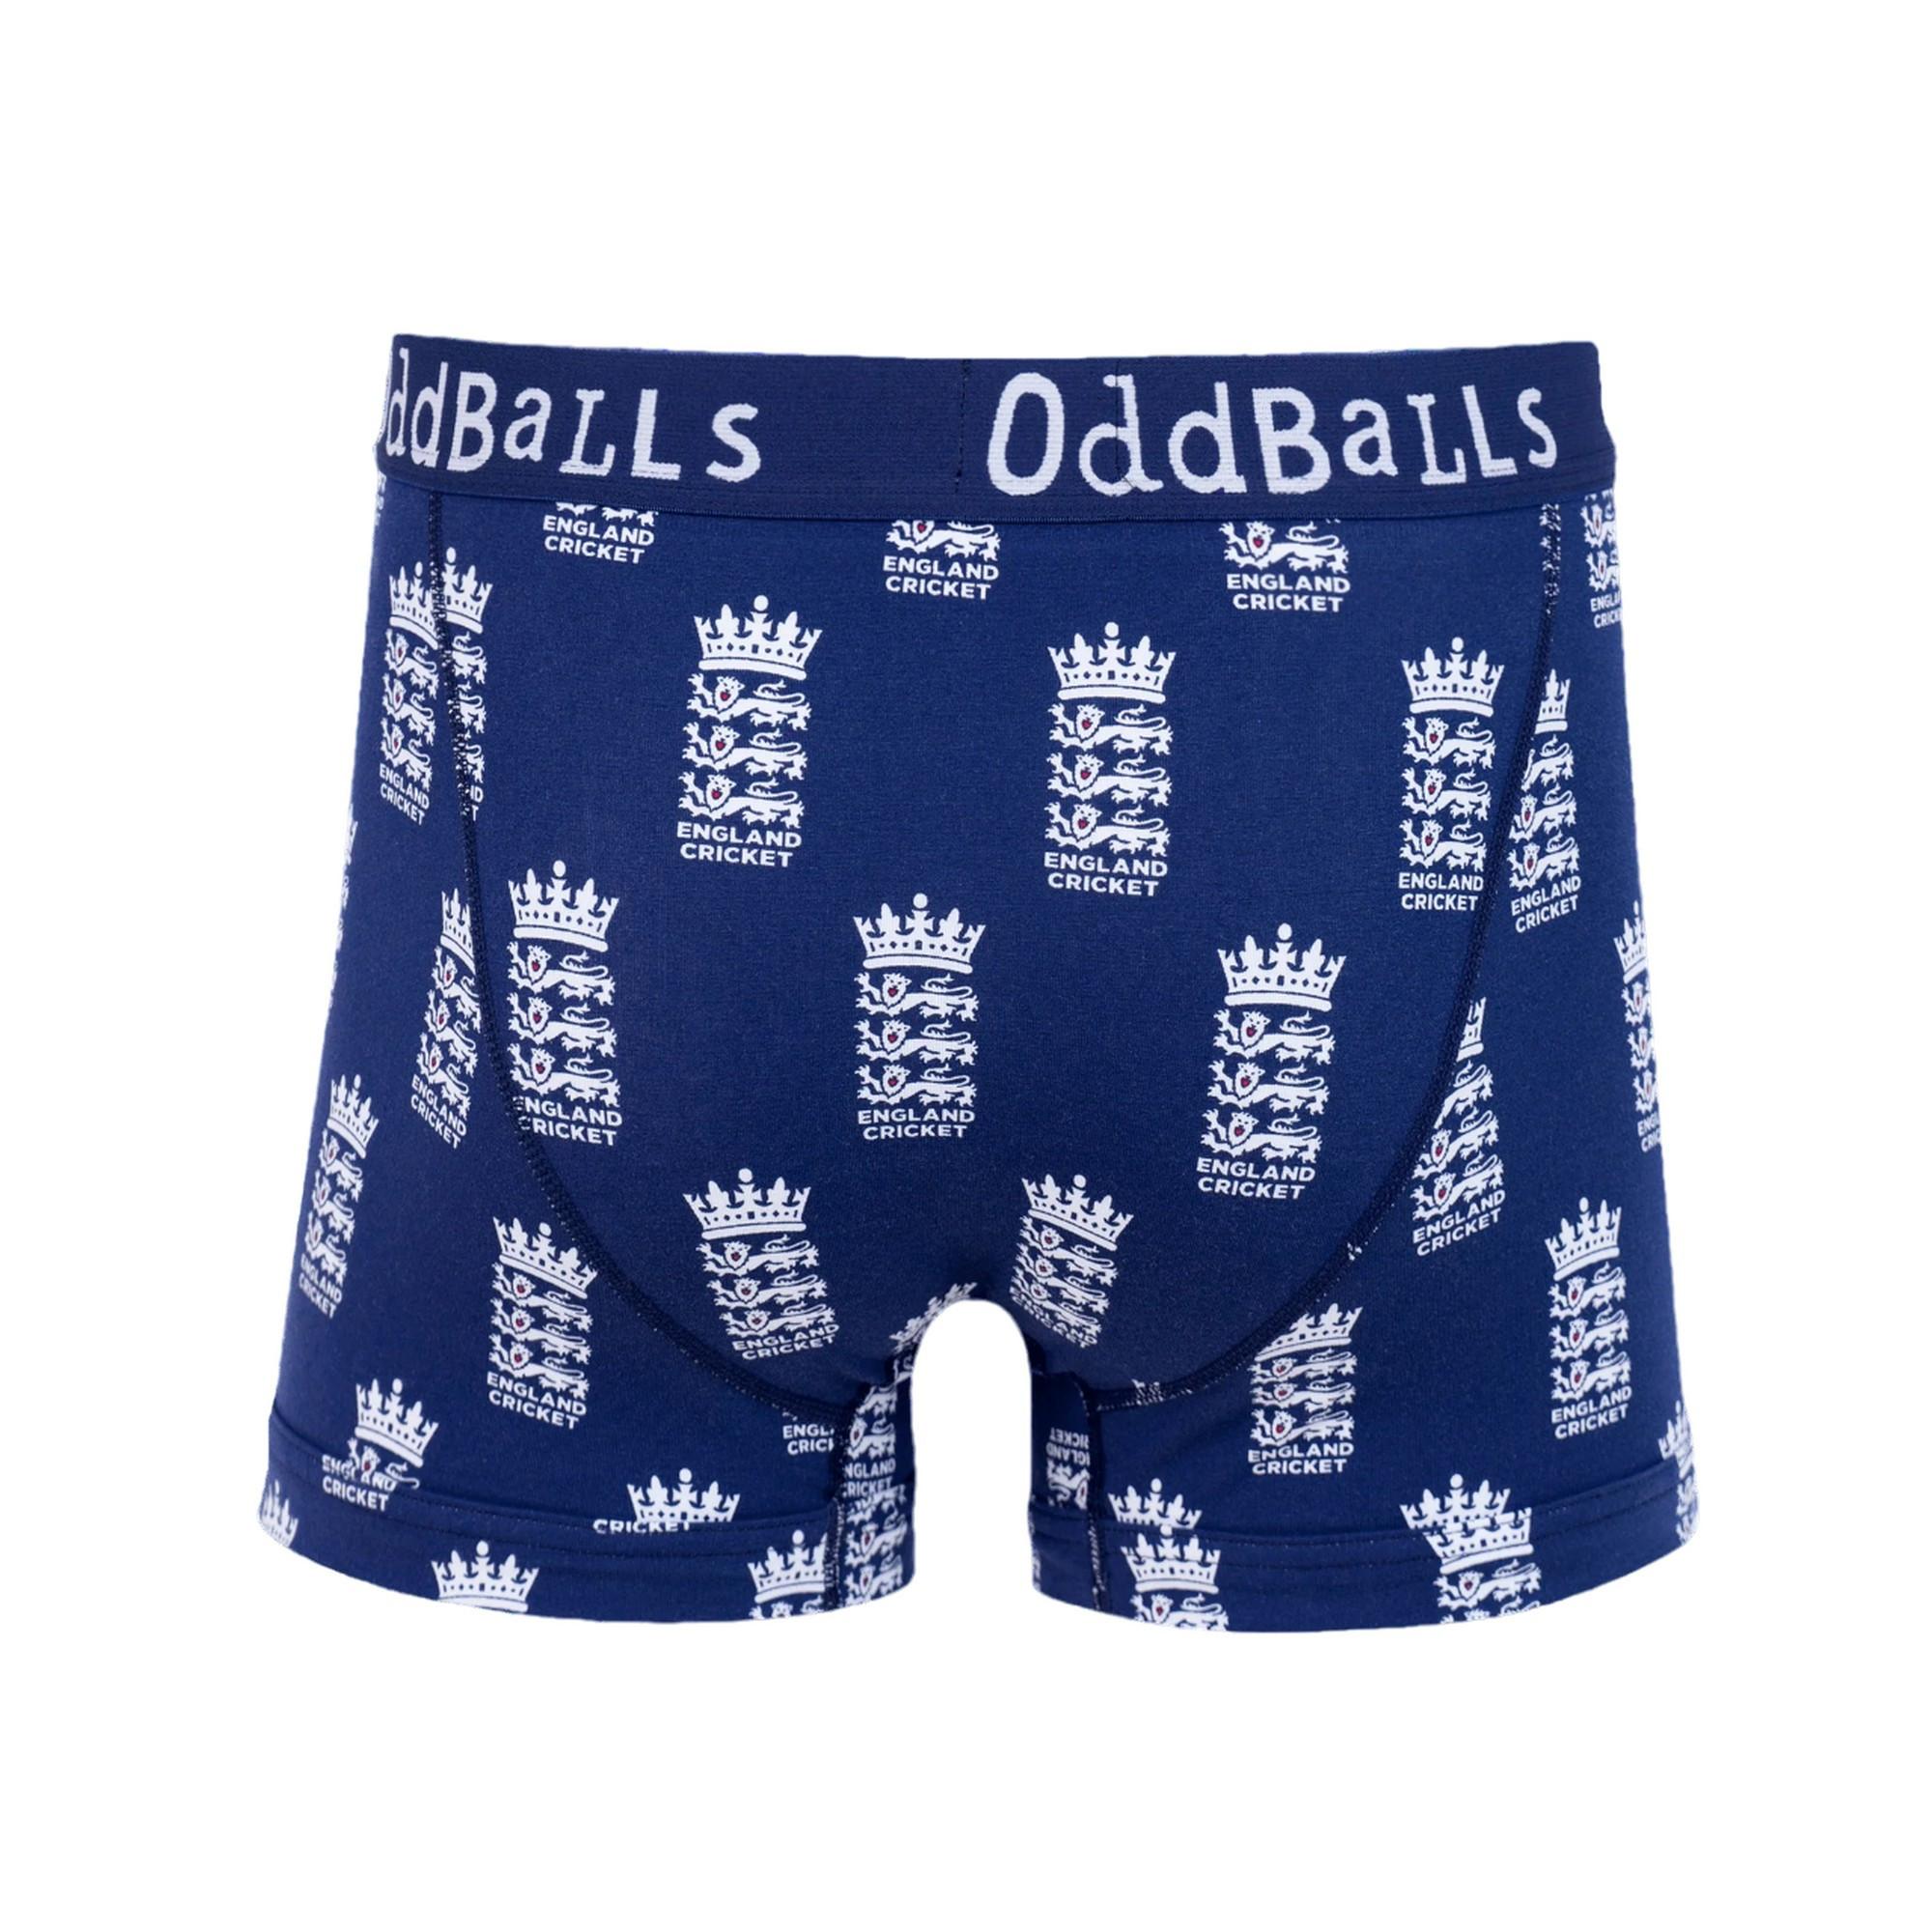 OddBalls  Boxershorts 